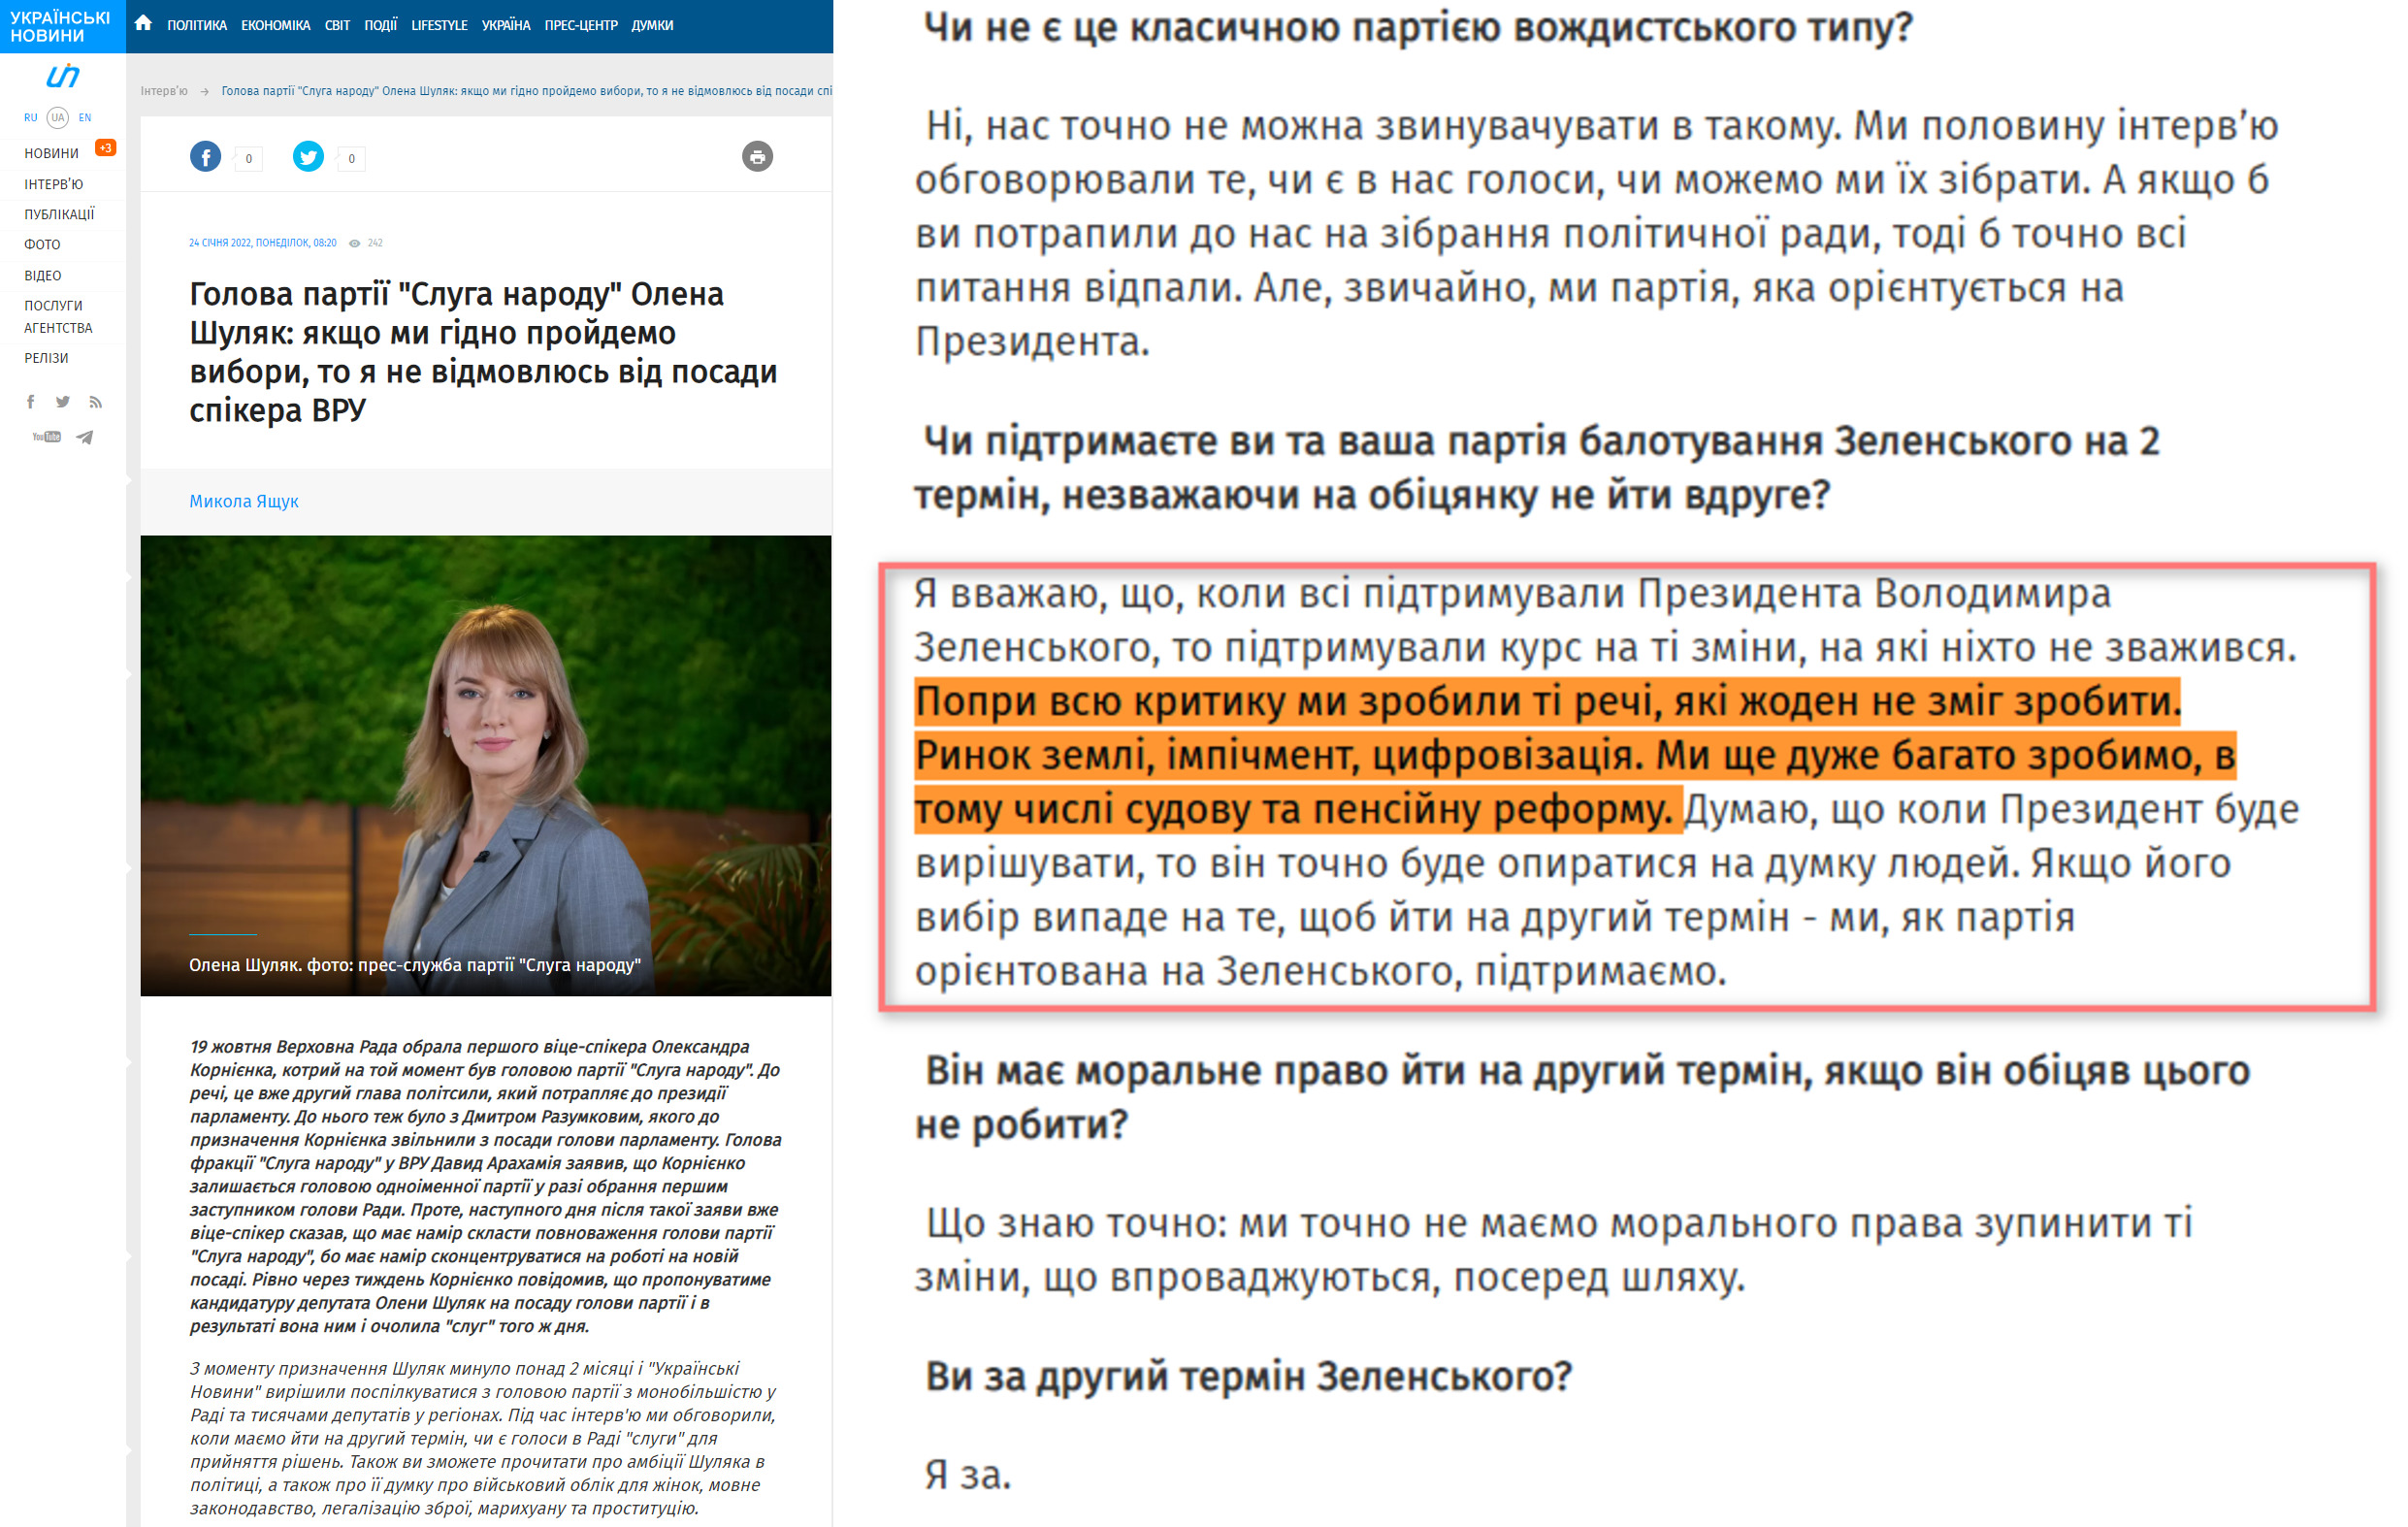 https://ukranews.com/ua/interview/2781-olena-shulyak-yakshho-my-gidno-projdemo-vybory-to-ya-ne-vidmovlyus-vid-posady-spikera-vru